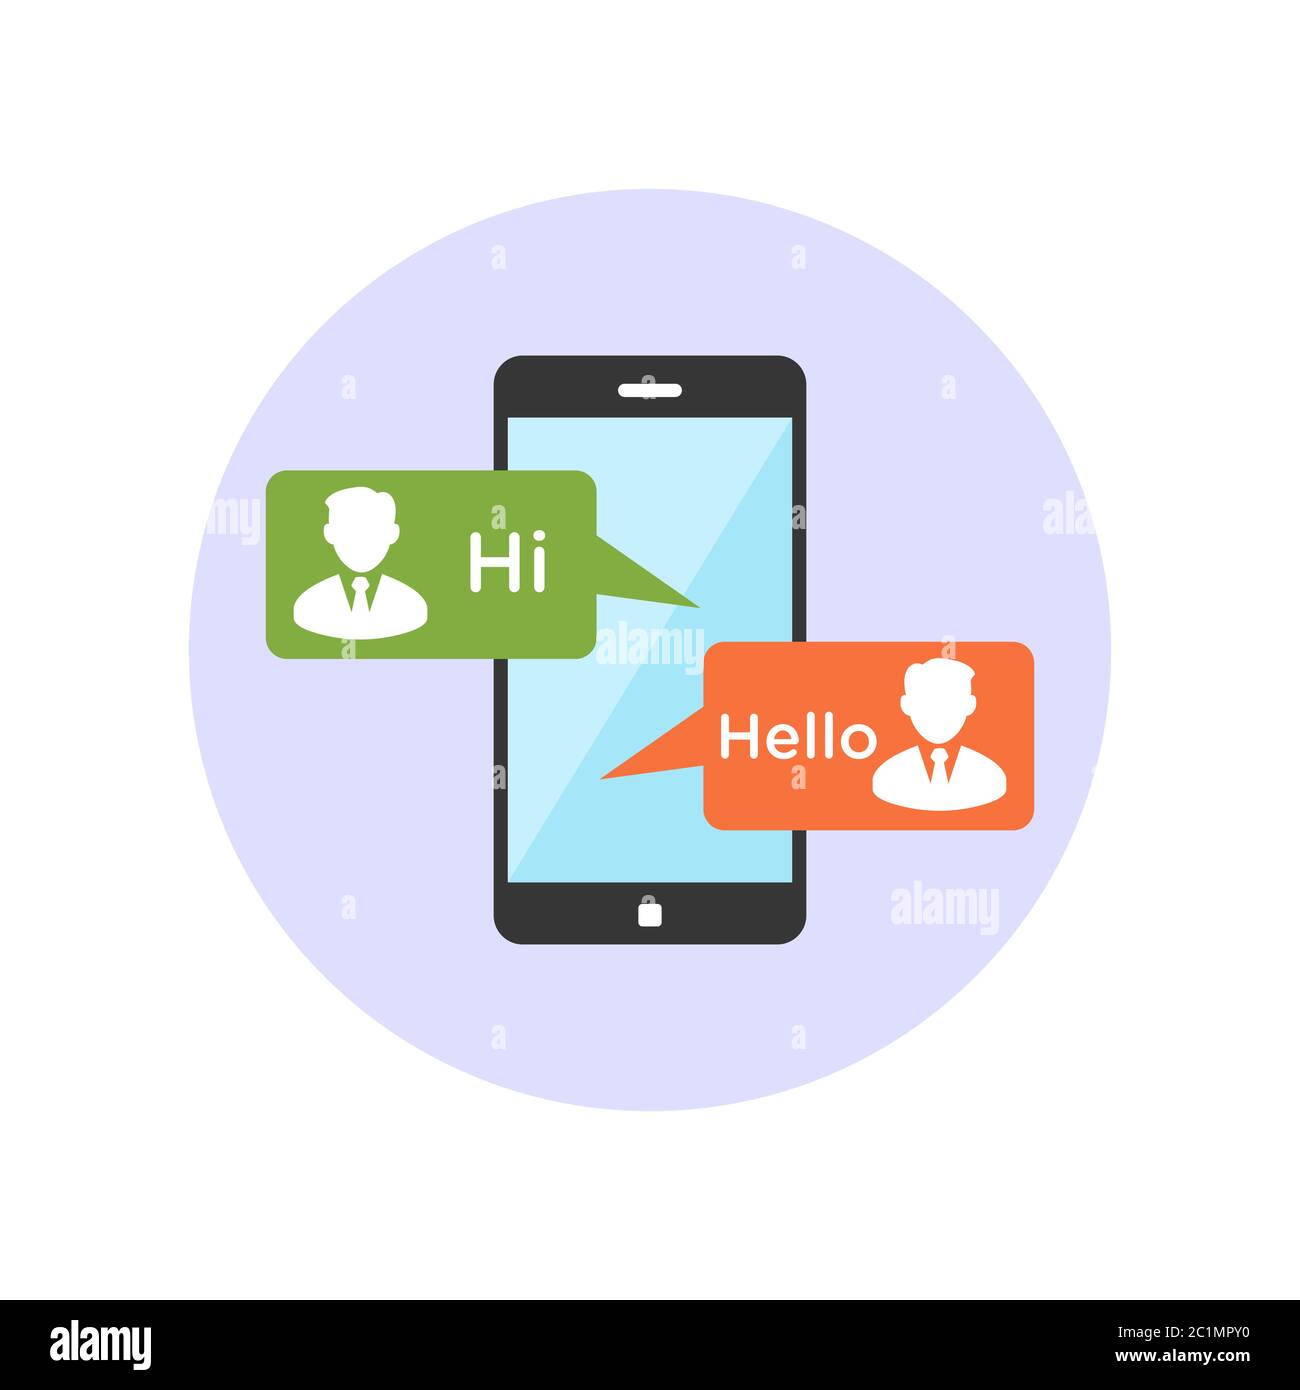 Begrüßen Sie sich gegenseitig und kommunizieren Sie mit Geschäftsbeziehungen über Smartphone-Medien-Chat. Vektordarstellung des Freundschaftsschaffens mit sozialen Medien. Stock Vektor